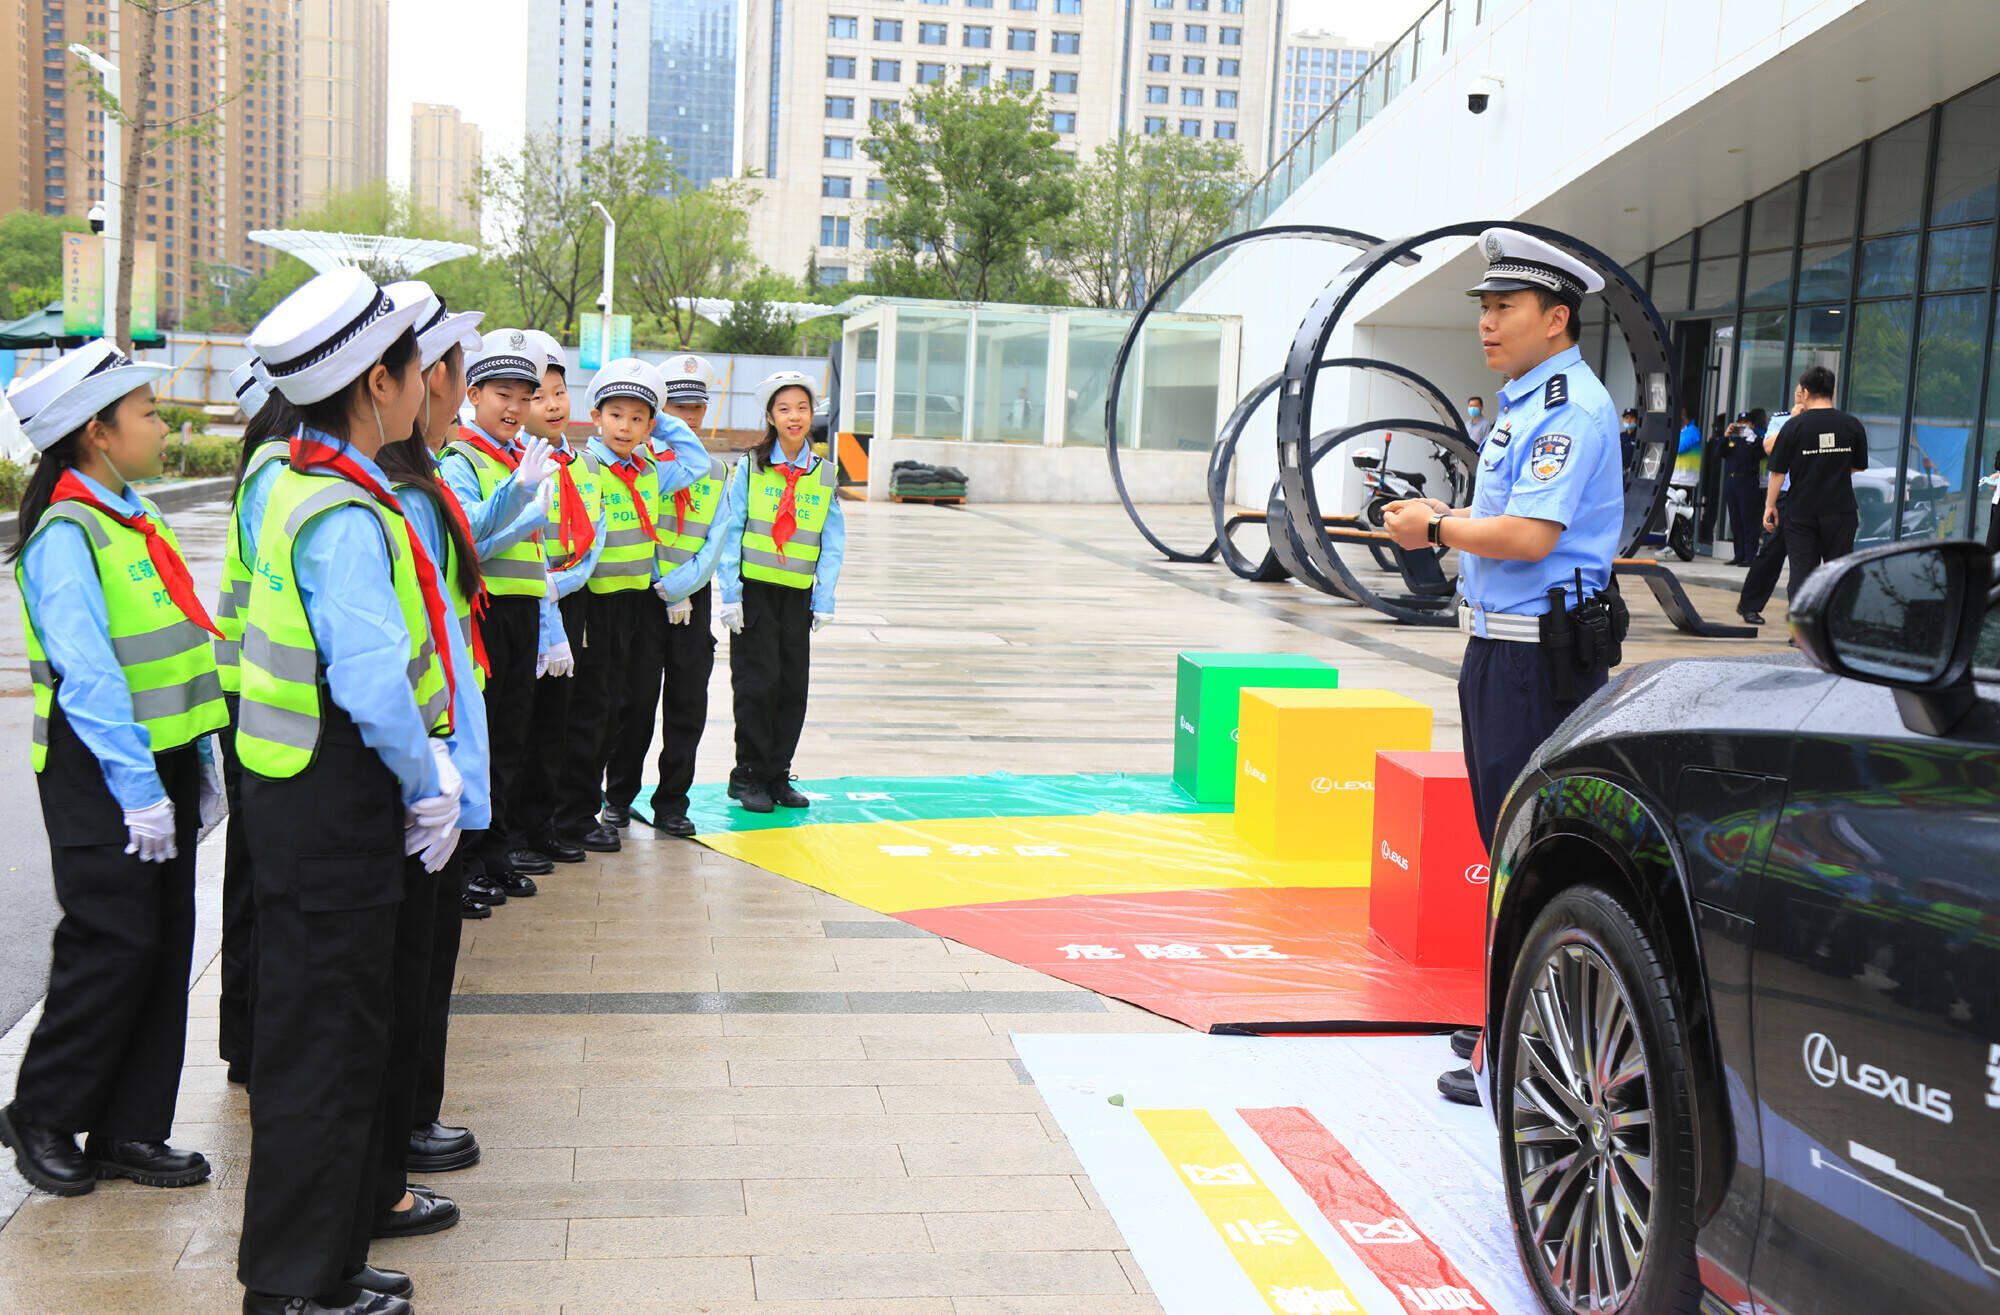 安全和文明是送给孩子最好的礼物 济南交警举办儿童交通安全体验活动